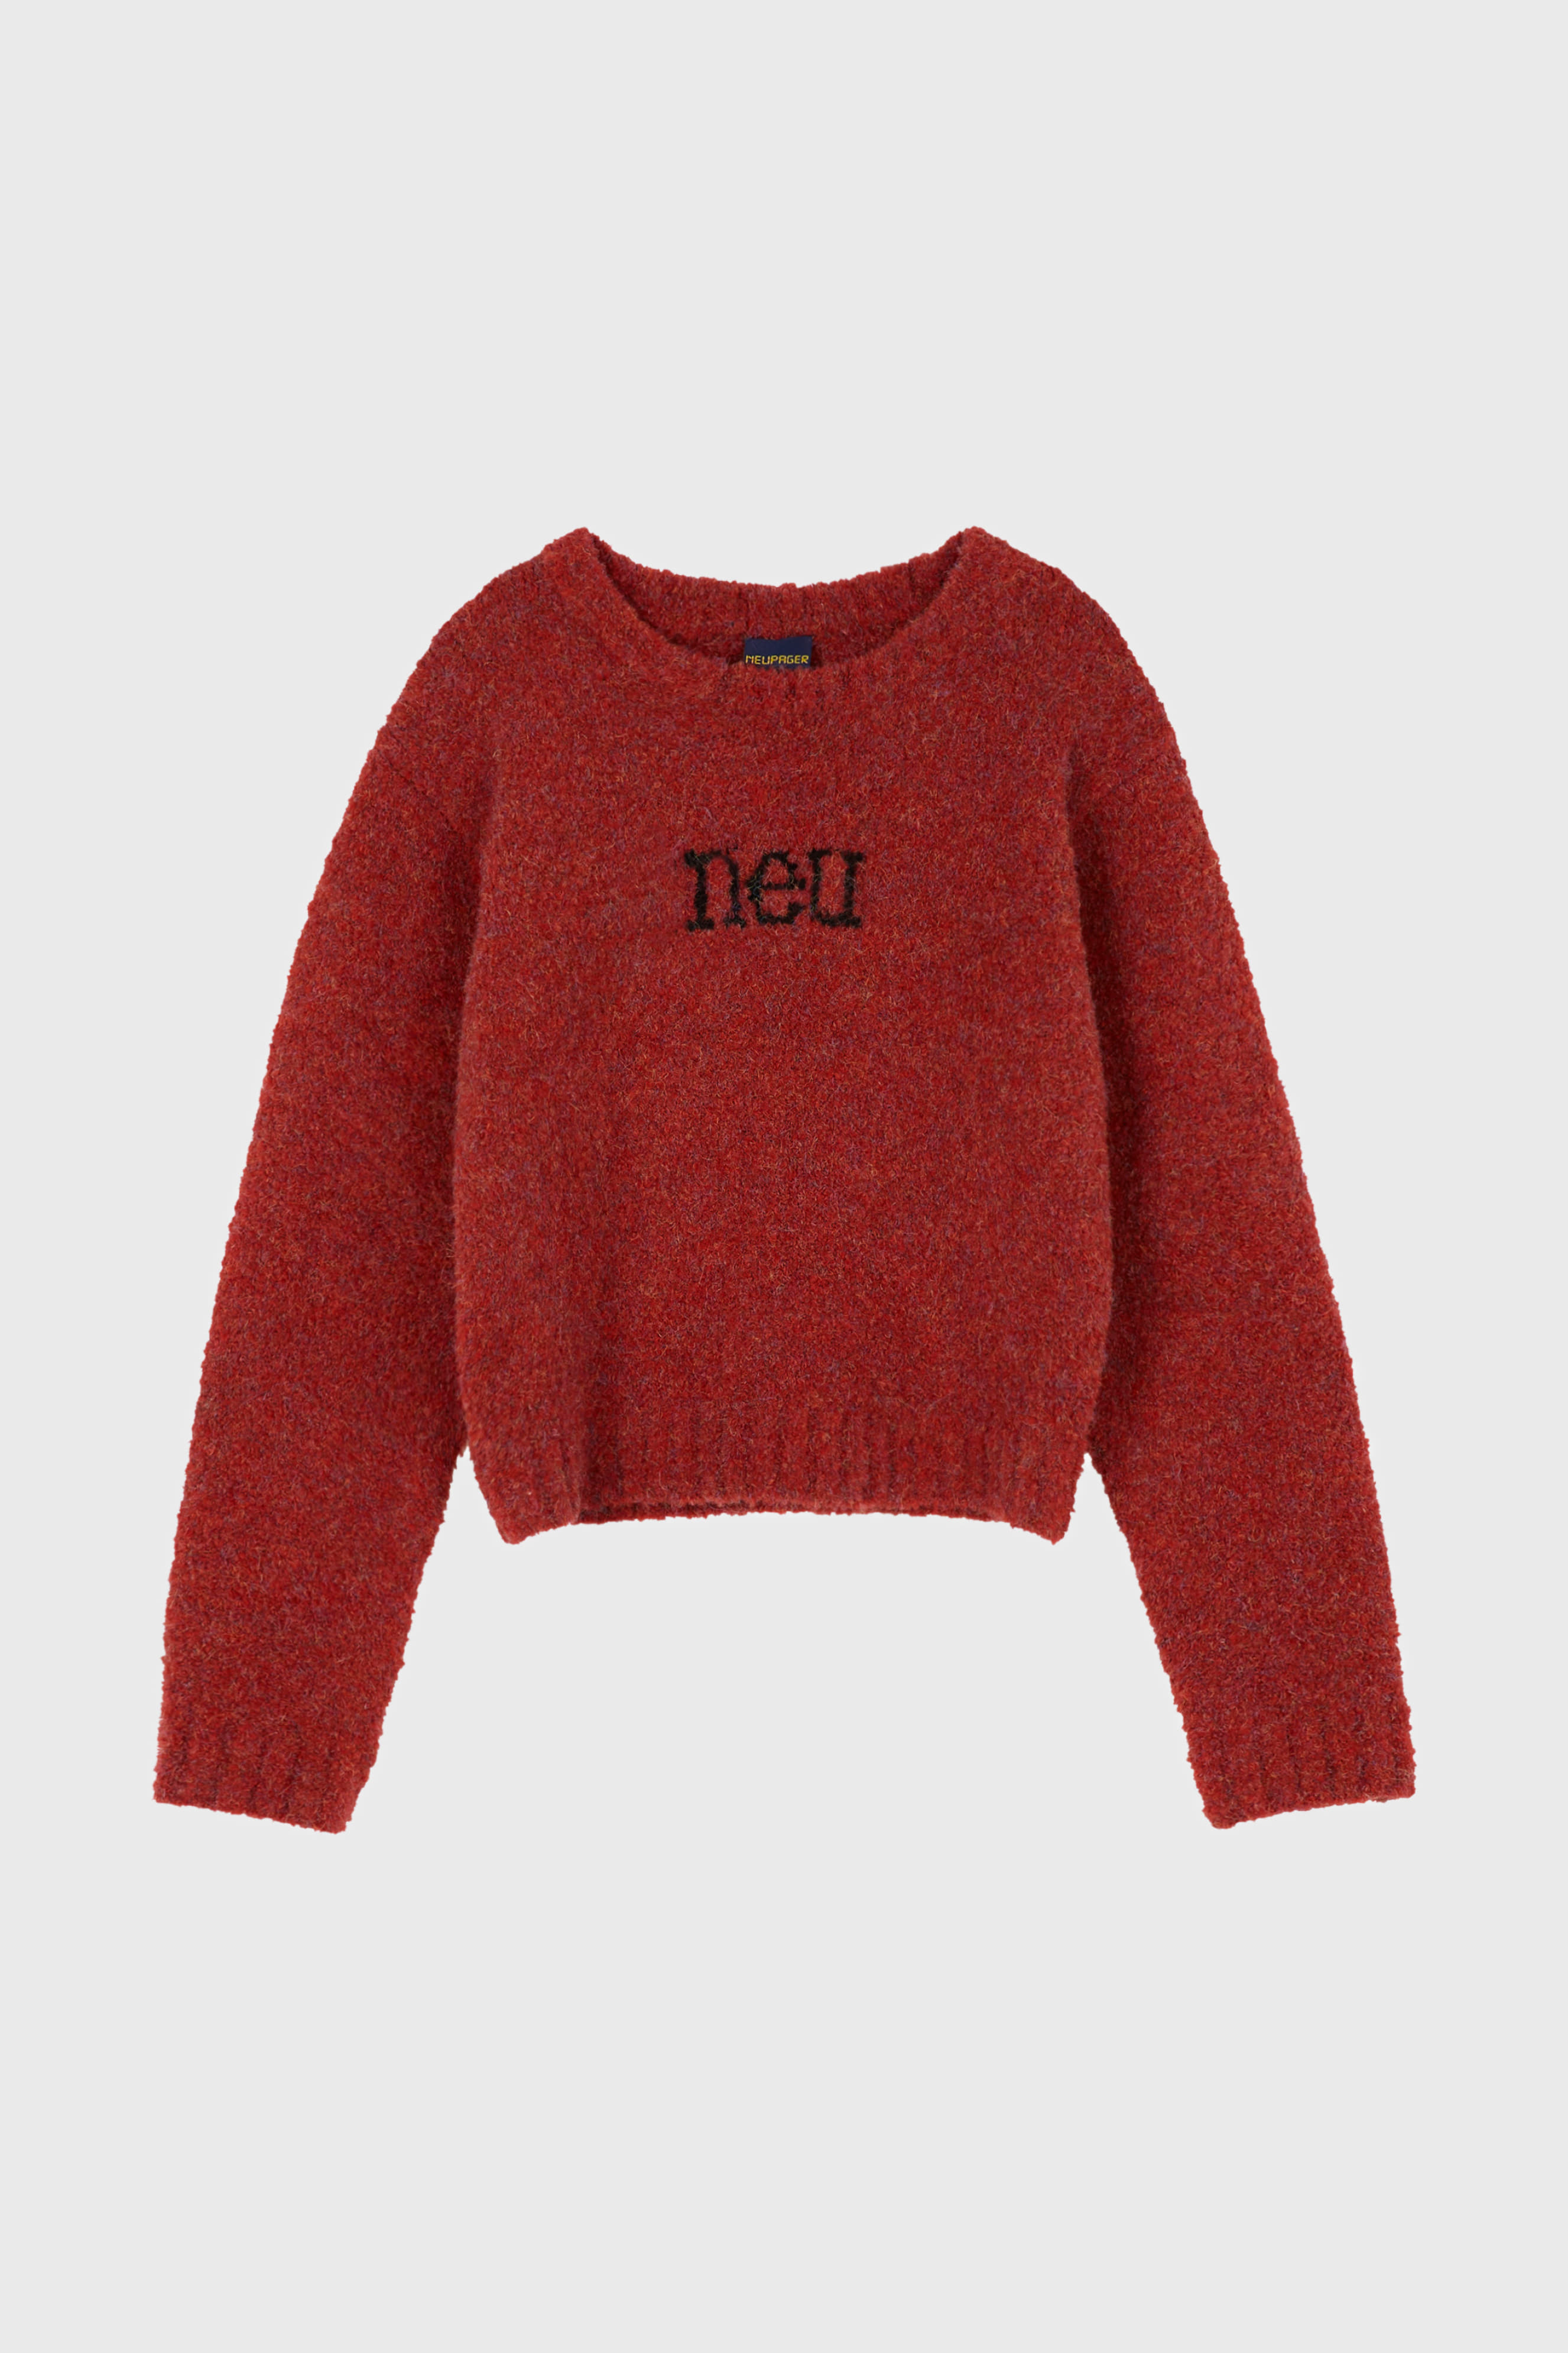 neu sweater - red